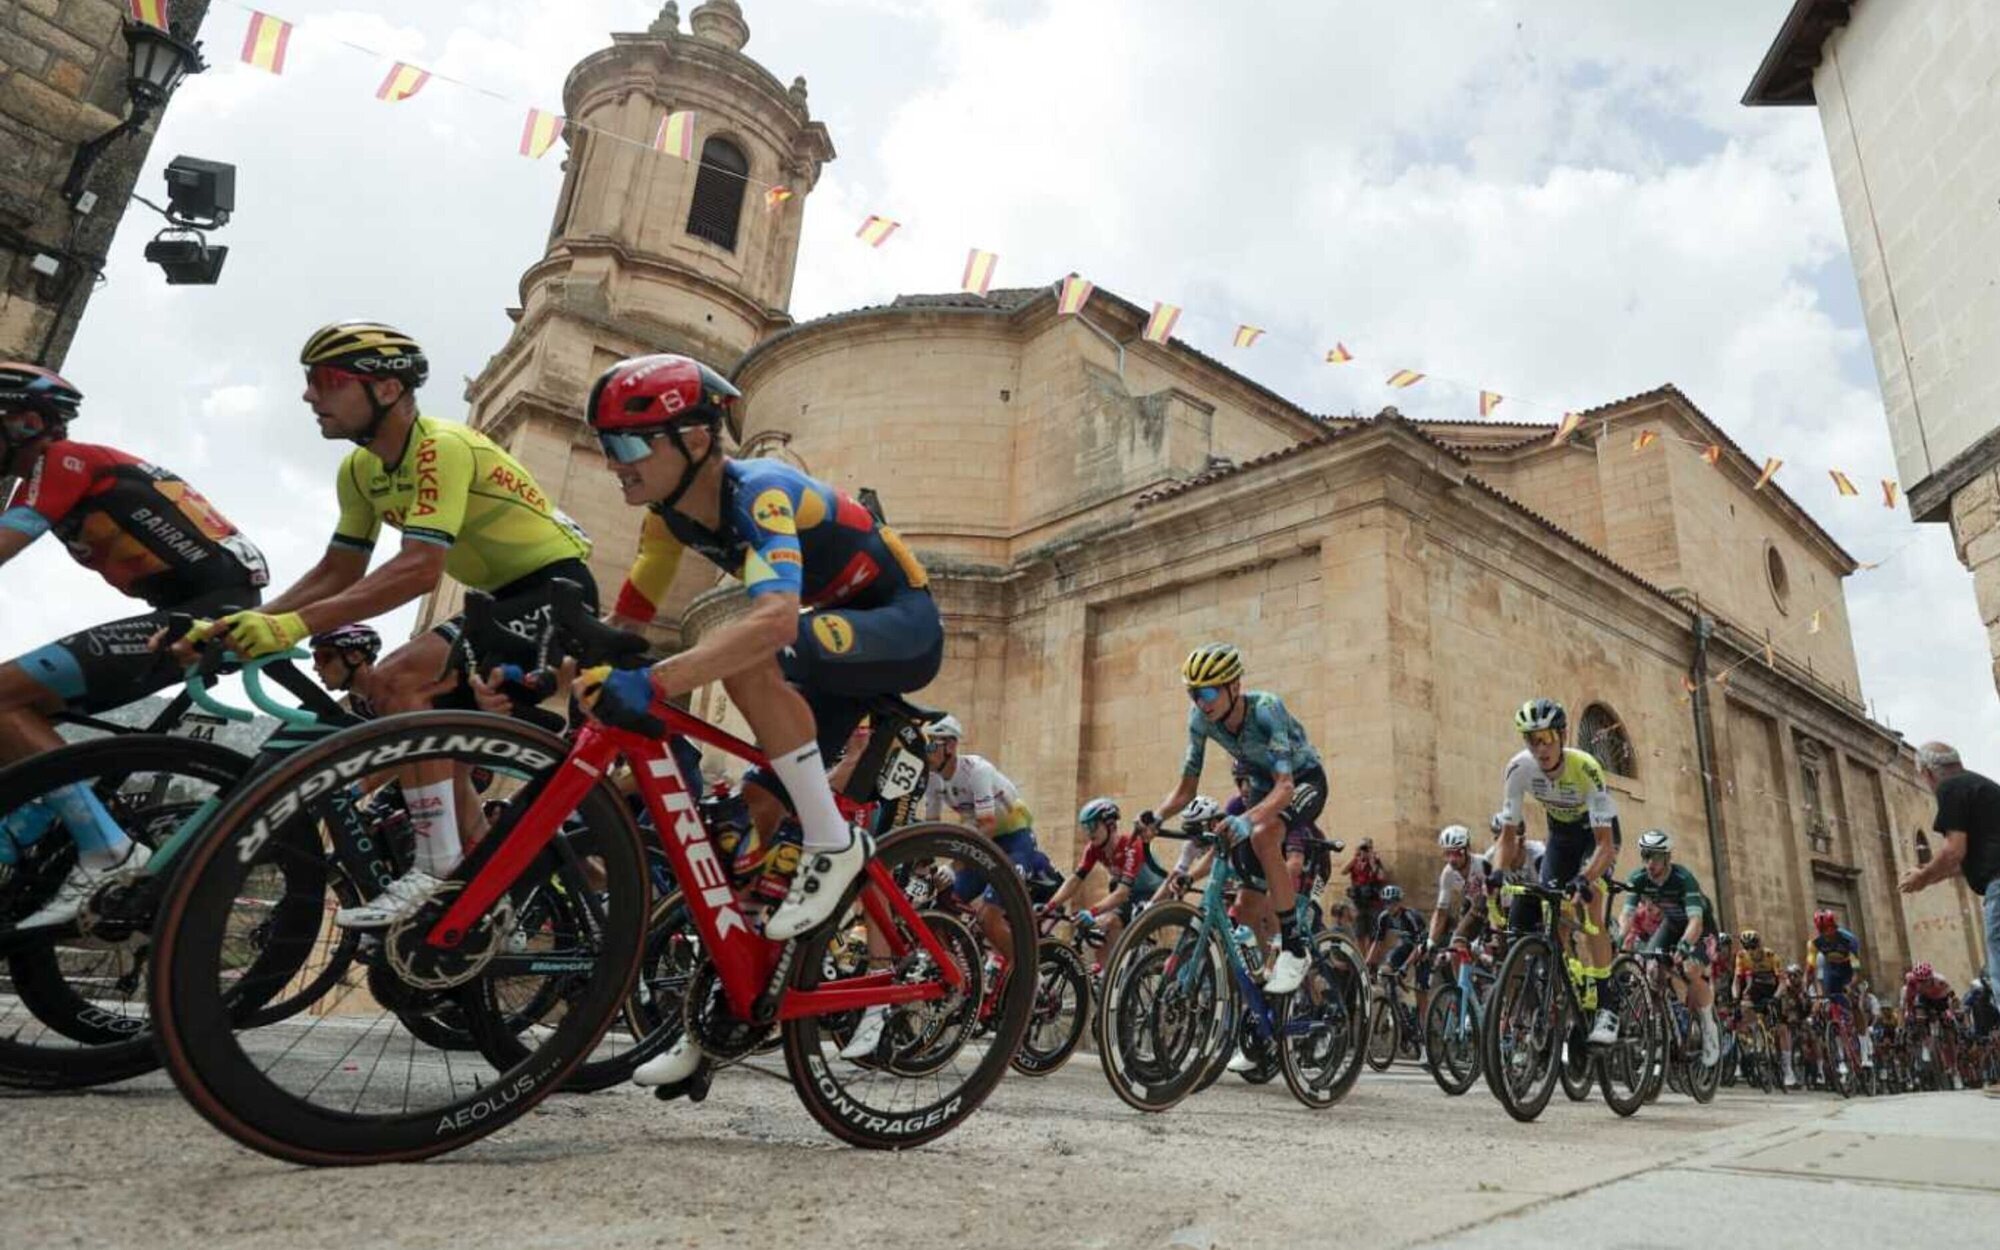 La 11ª etapa de La Vuelta a España pedalea fuerte contra 'Mujer' de Nova y el western de Trece